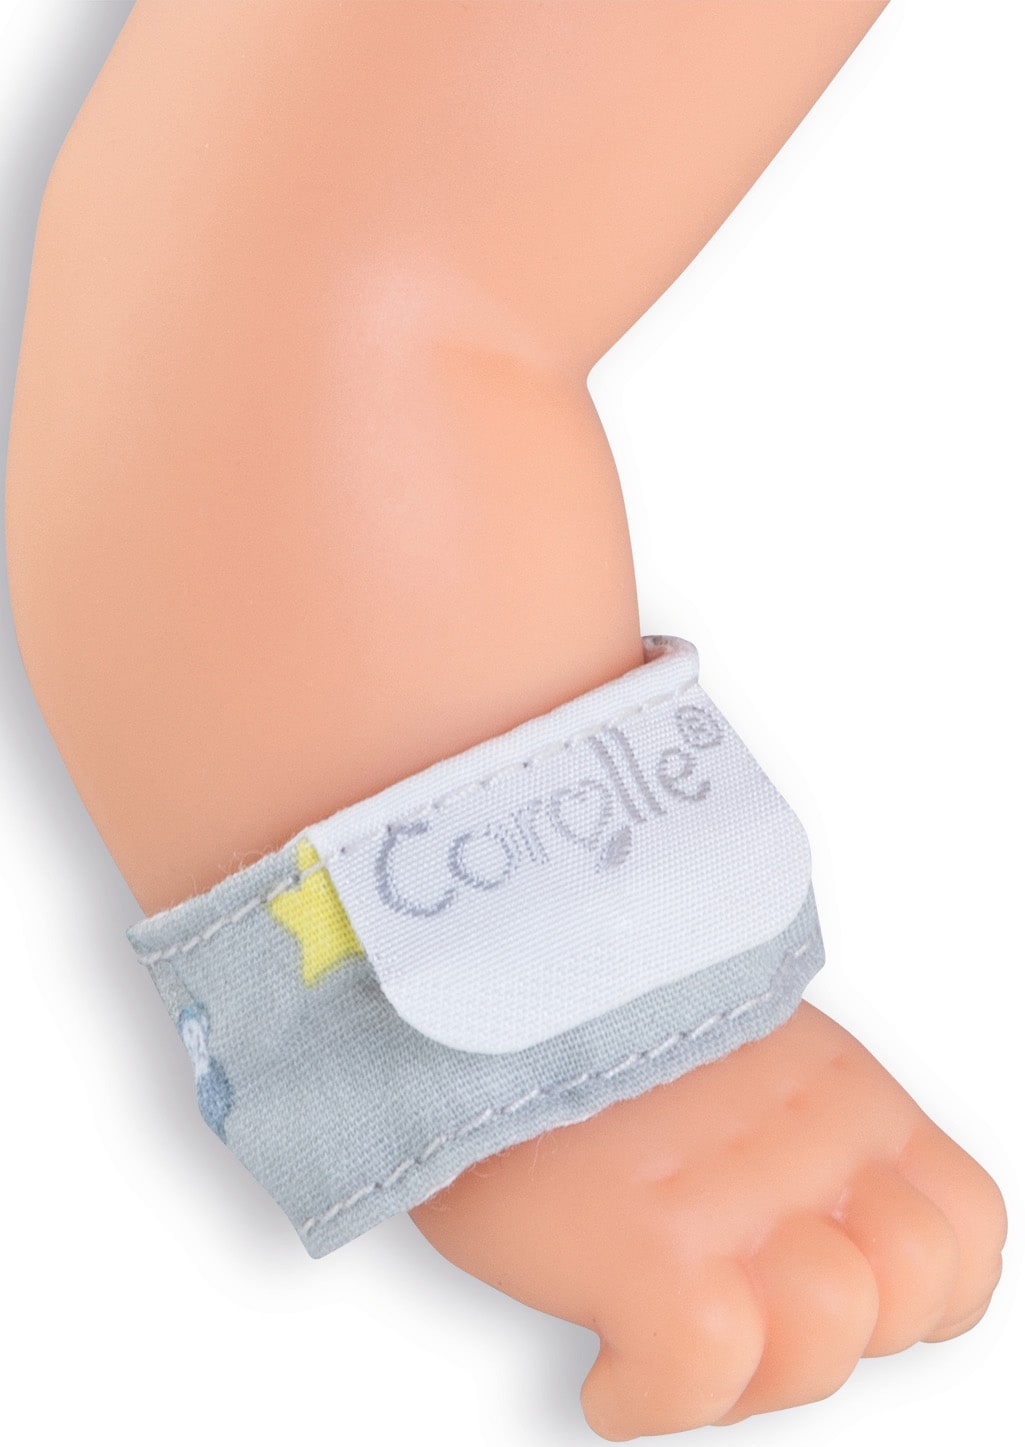 Corolle® Babypuppe »Mon grand poupon, Mein Neugeborenen Set«, mit Vanilleduft